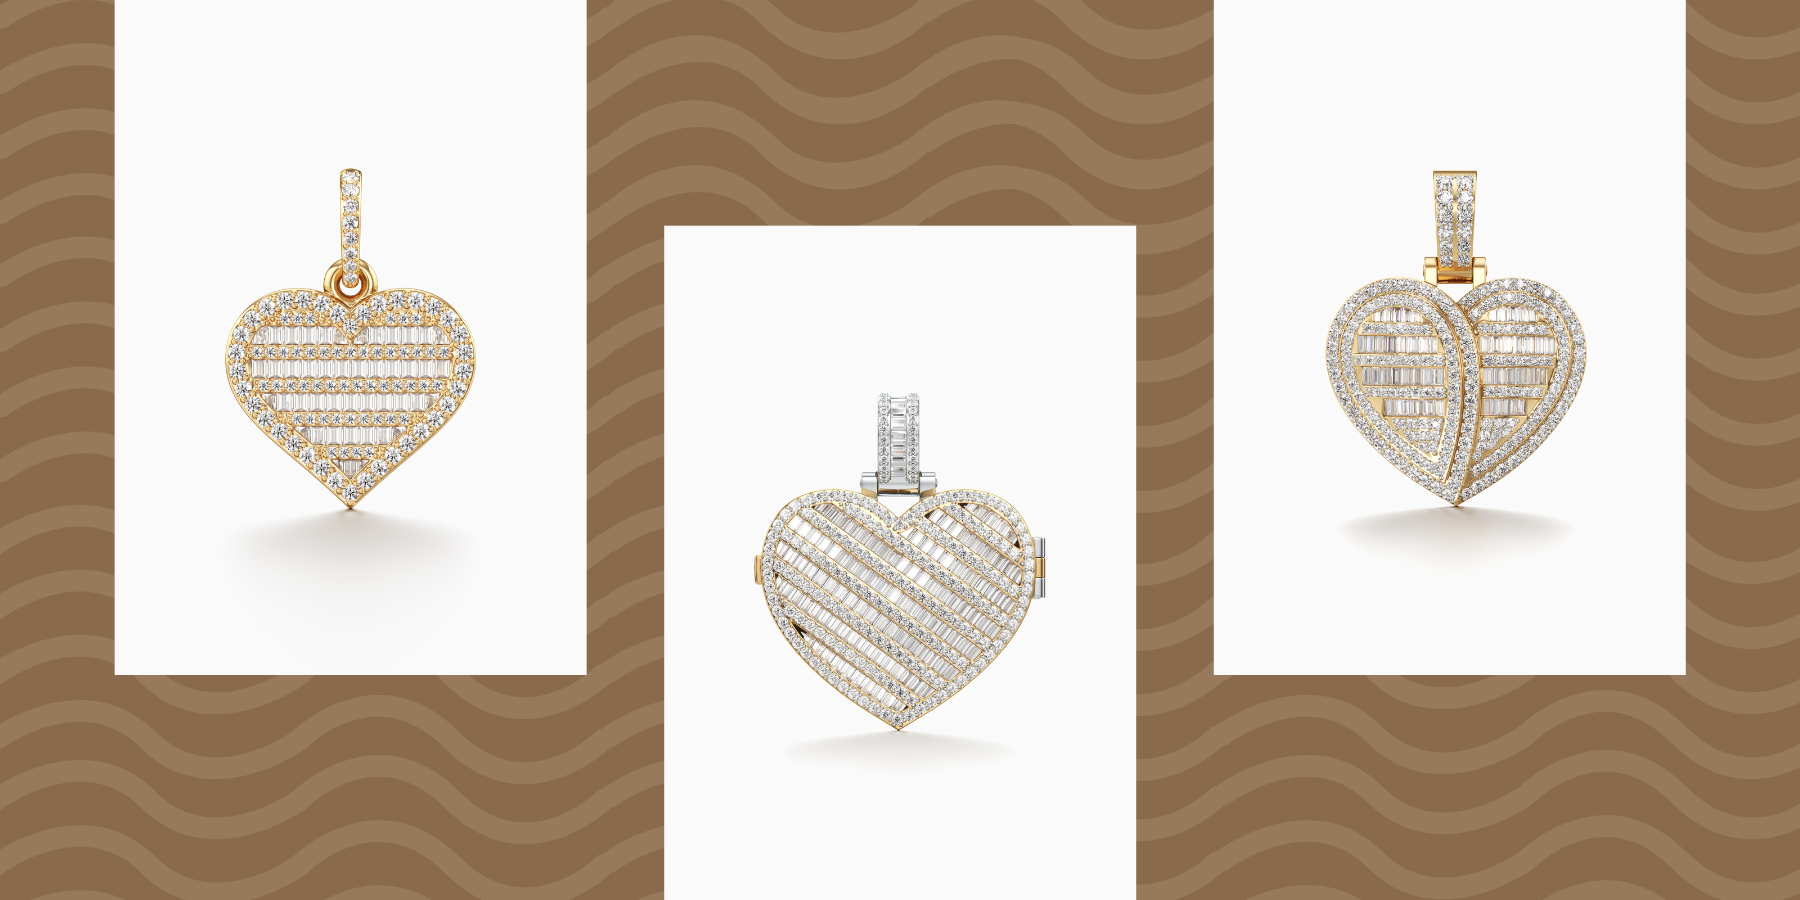 10 Diamond Heart Shaped Pendants To Buy In 2023